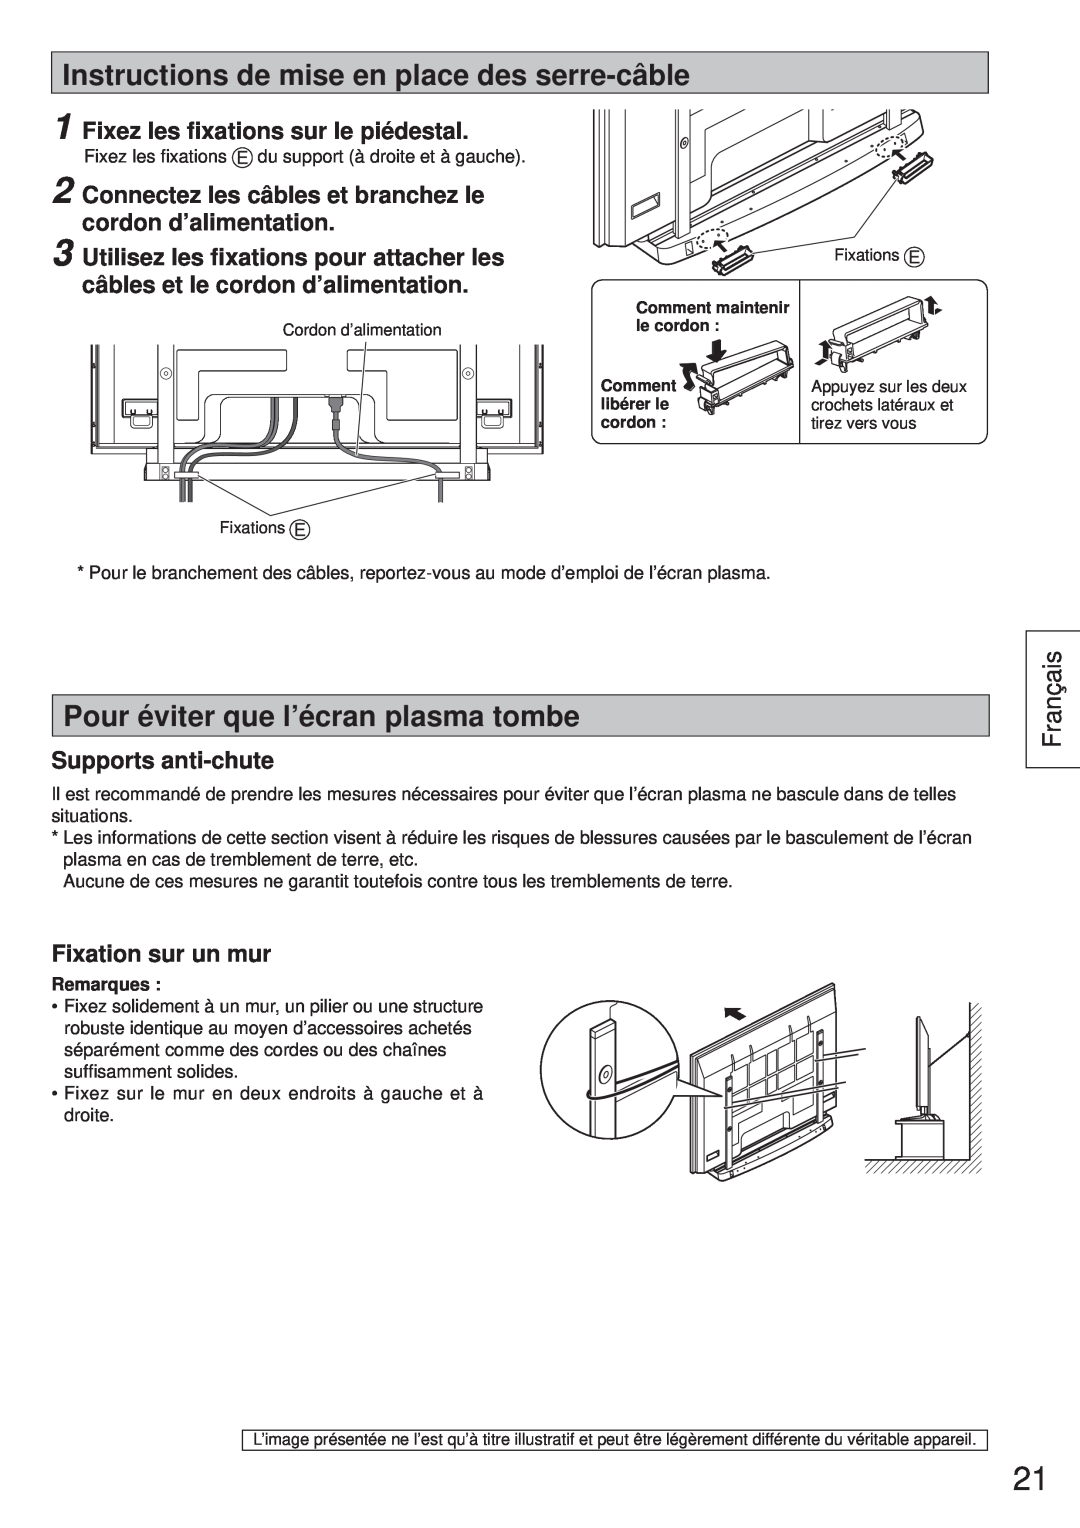 Panasonic TY-ST65VX100 Instructions de mise en place des serre-câble, Pour éviter que l’écran plasma tombe, Français 